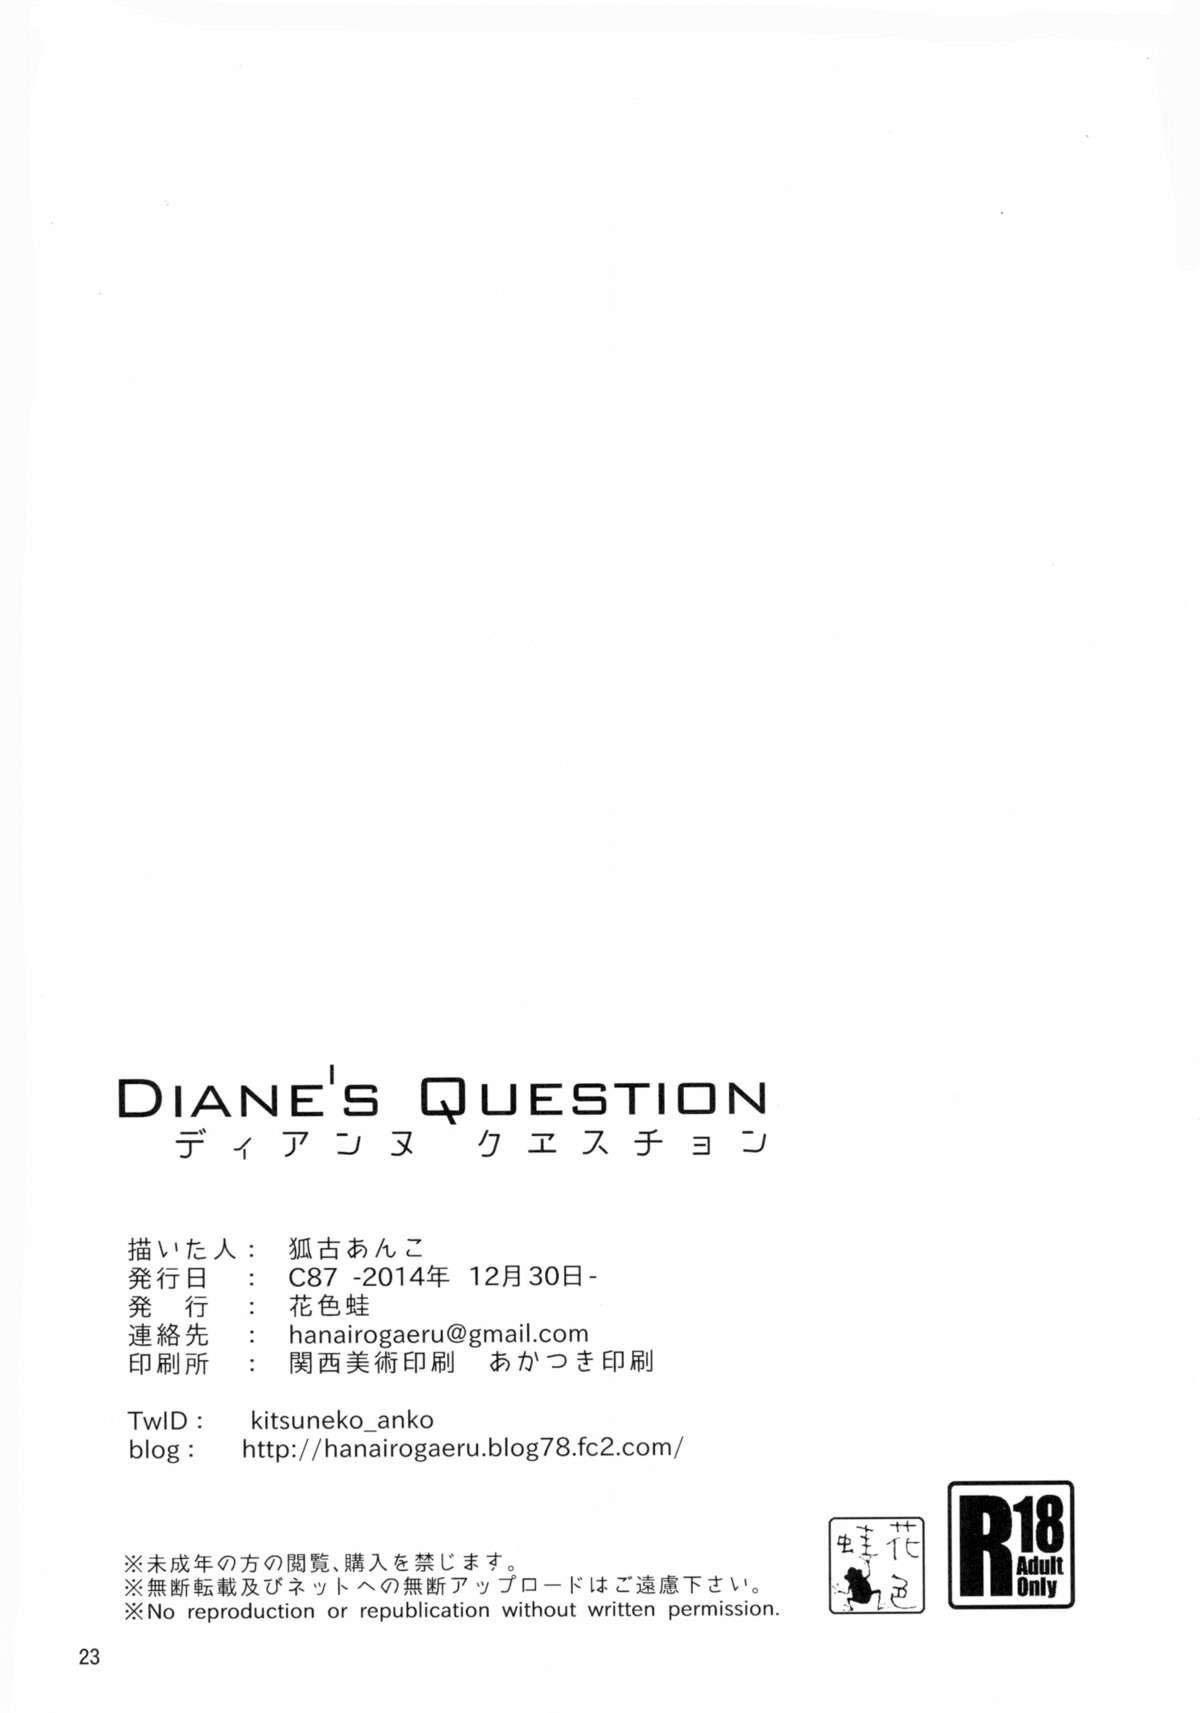 Diane's Question